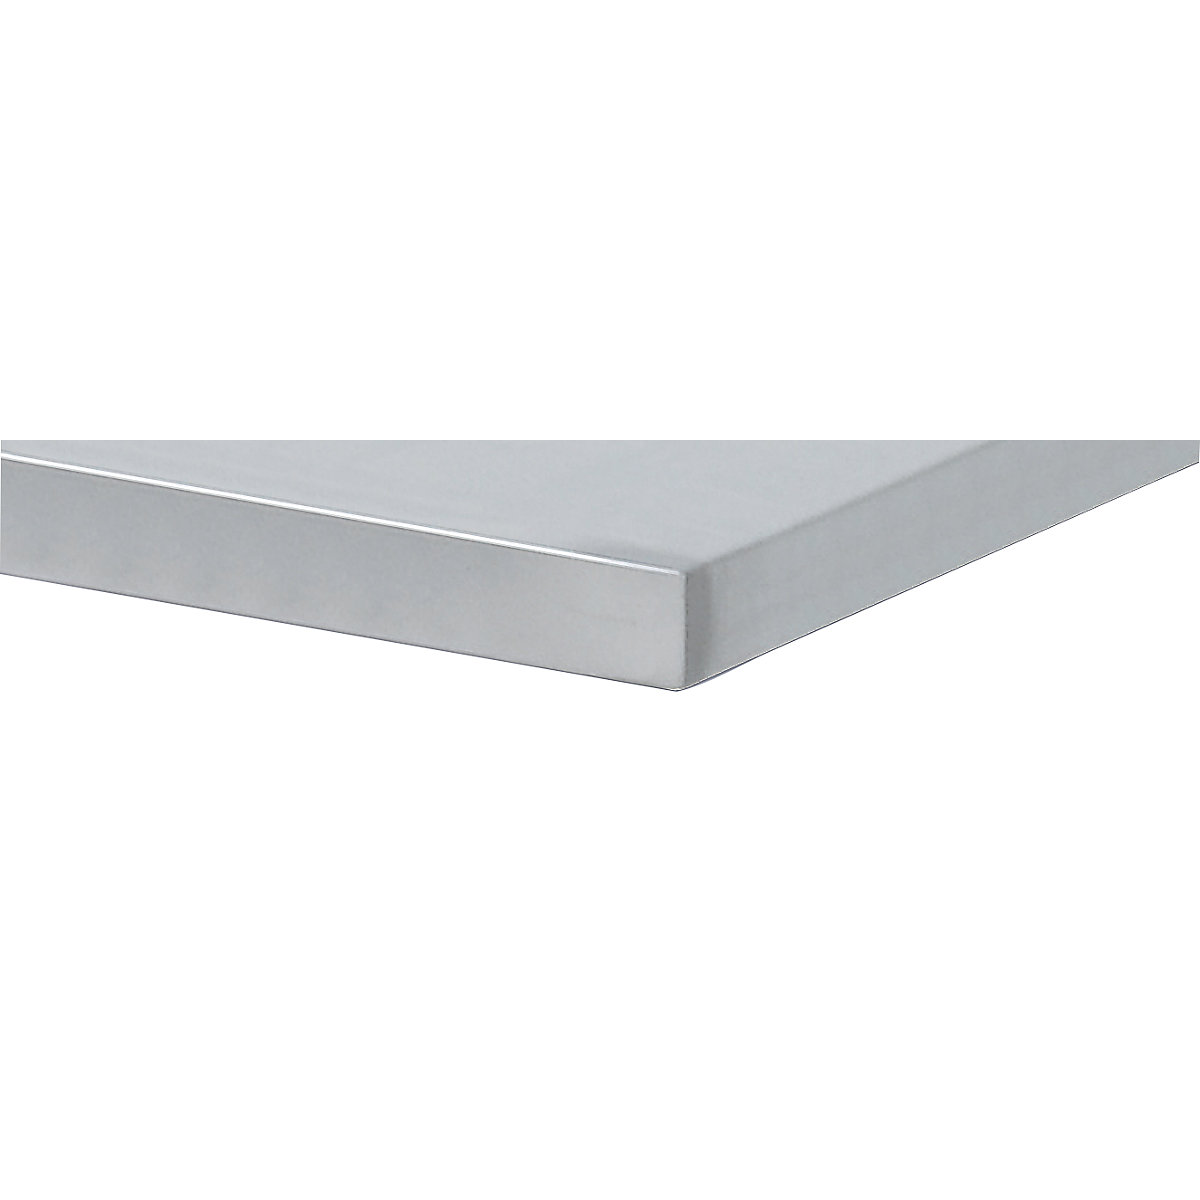 ANKE – Delovna miza širine 2800 mm, izvedba z ogrodjem (Slika izdelka 5)